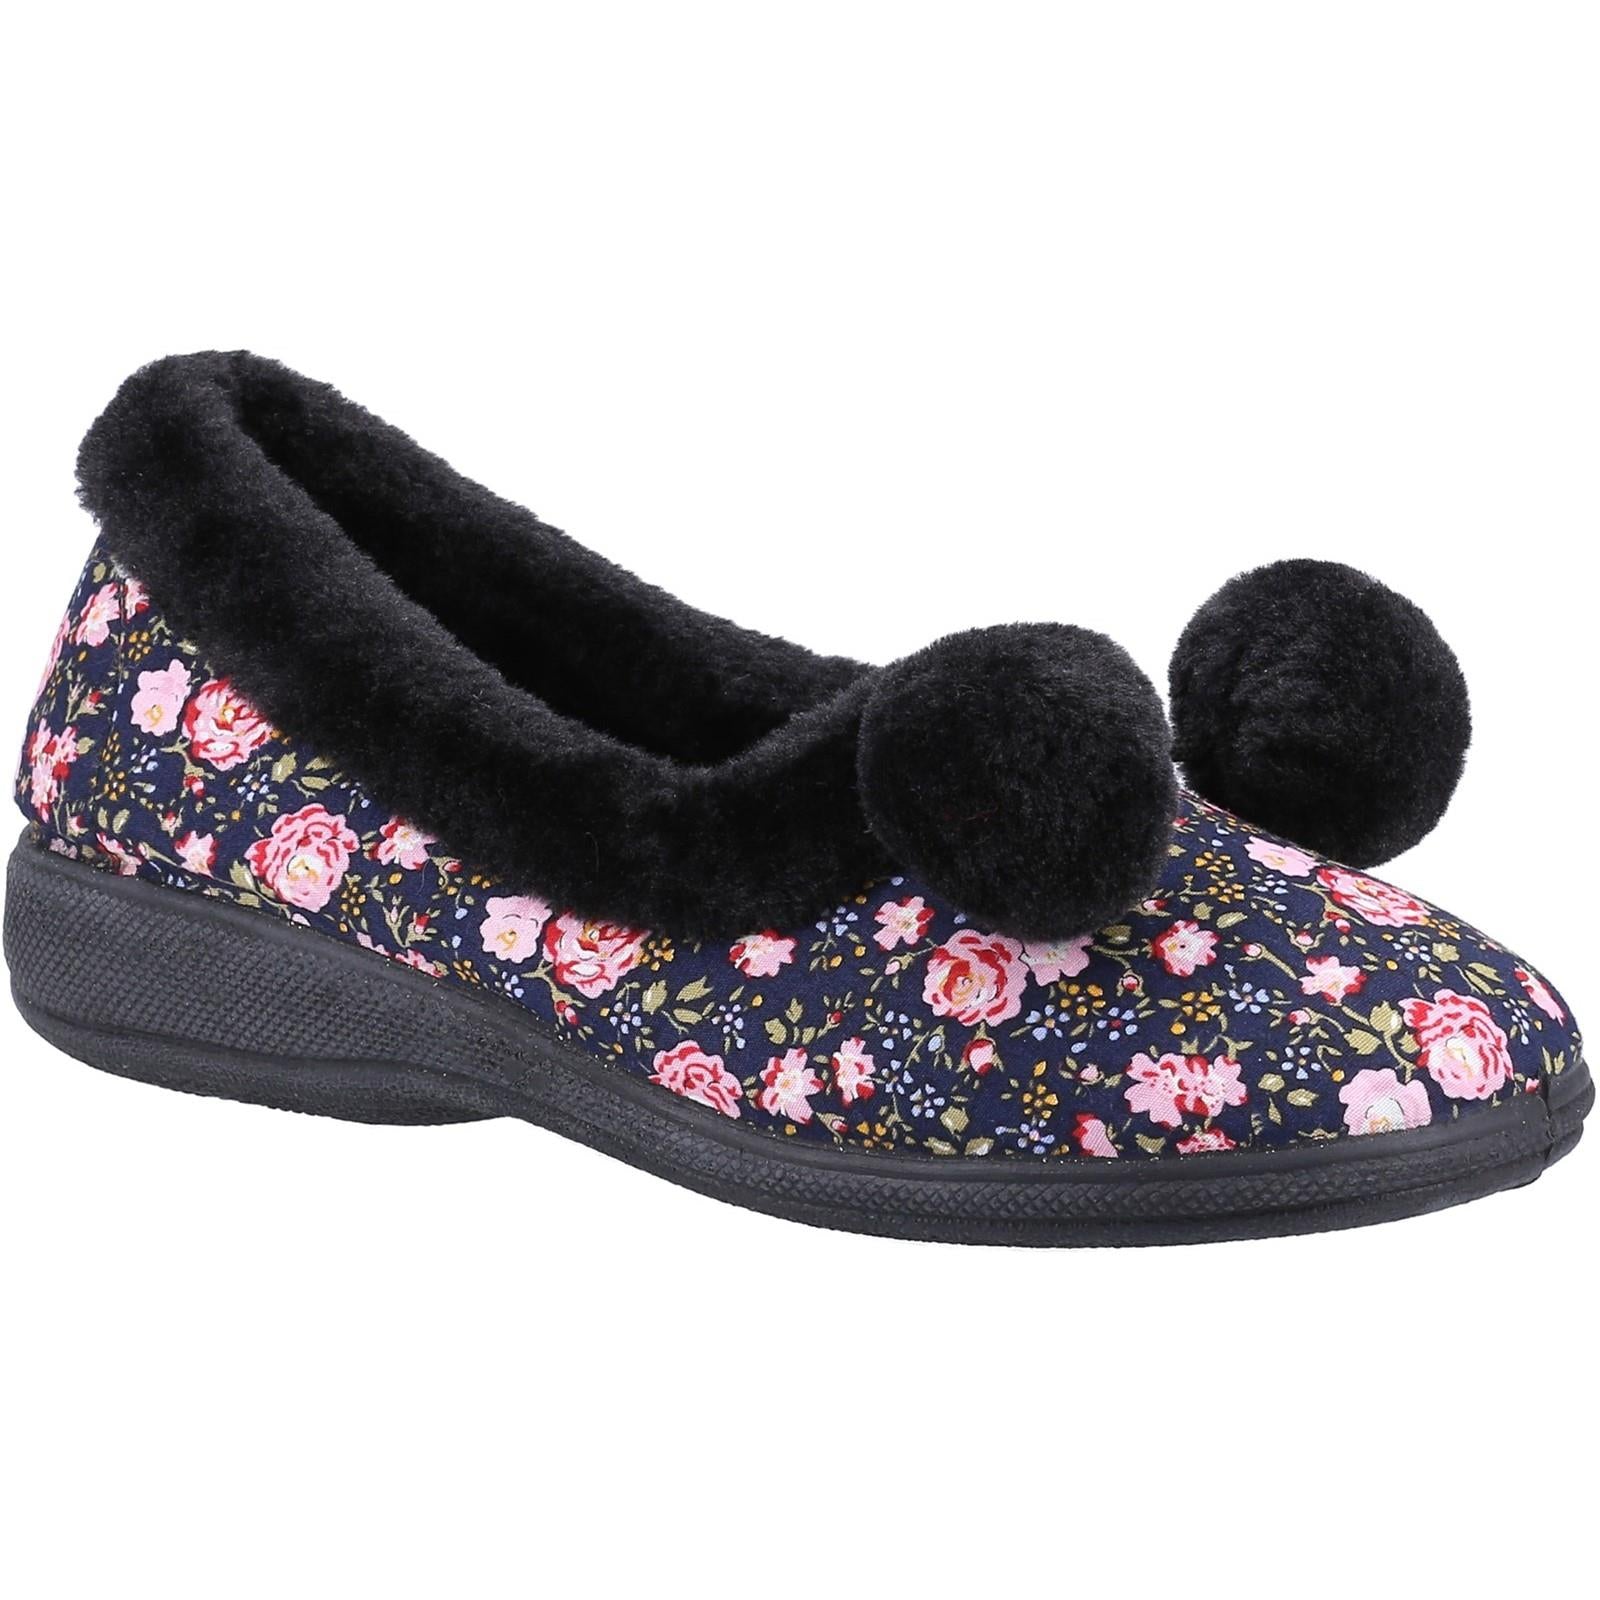 Fleet & Foster Goldfinch black slip on multi floral design full slipper